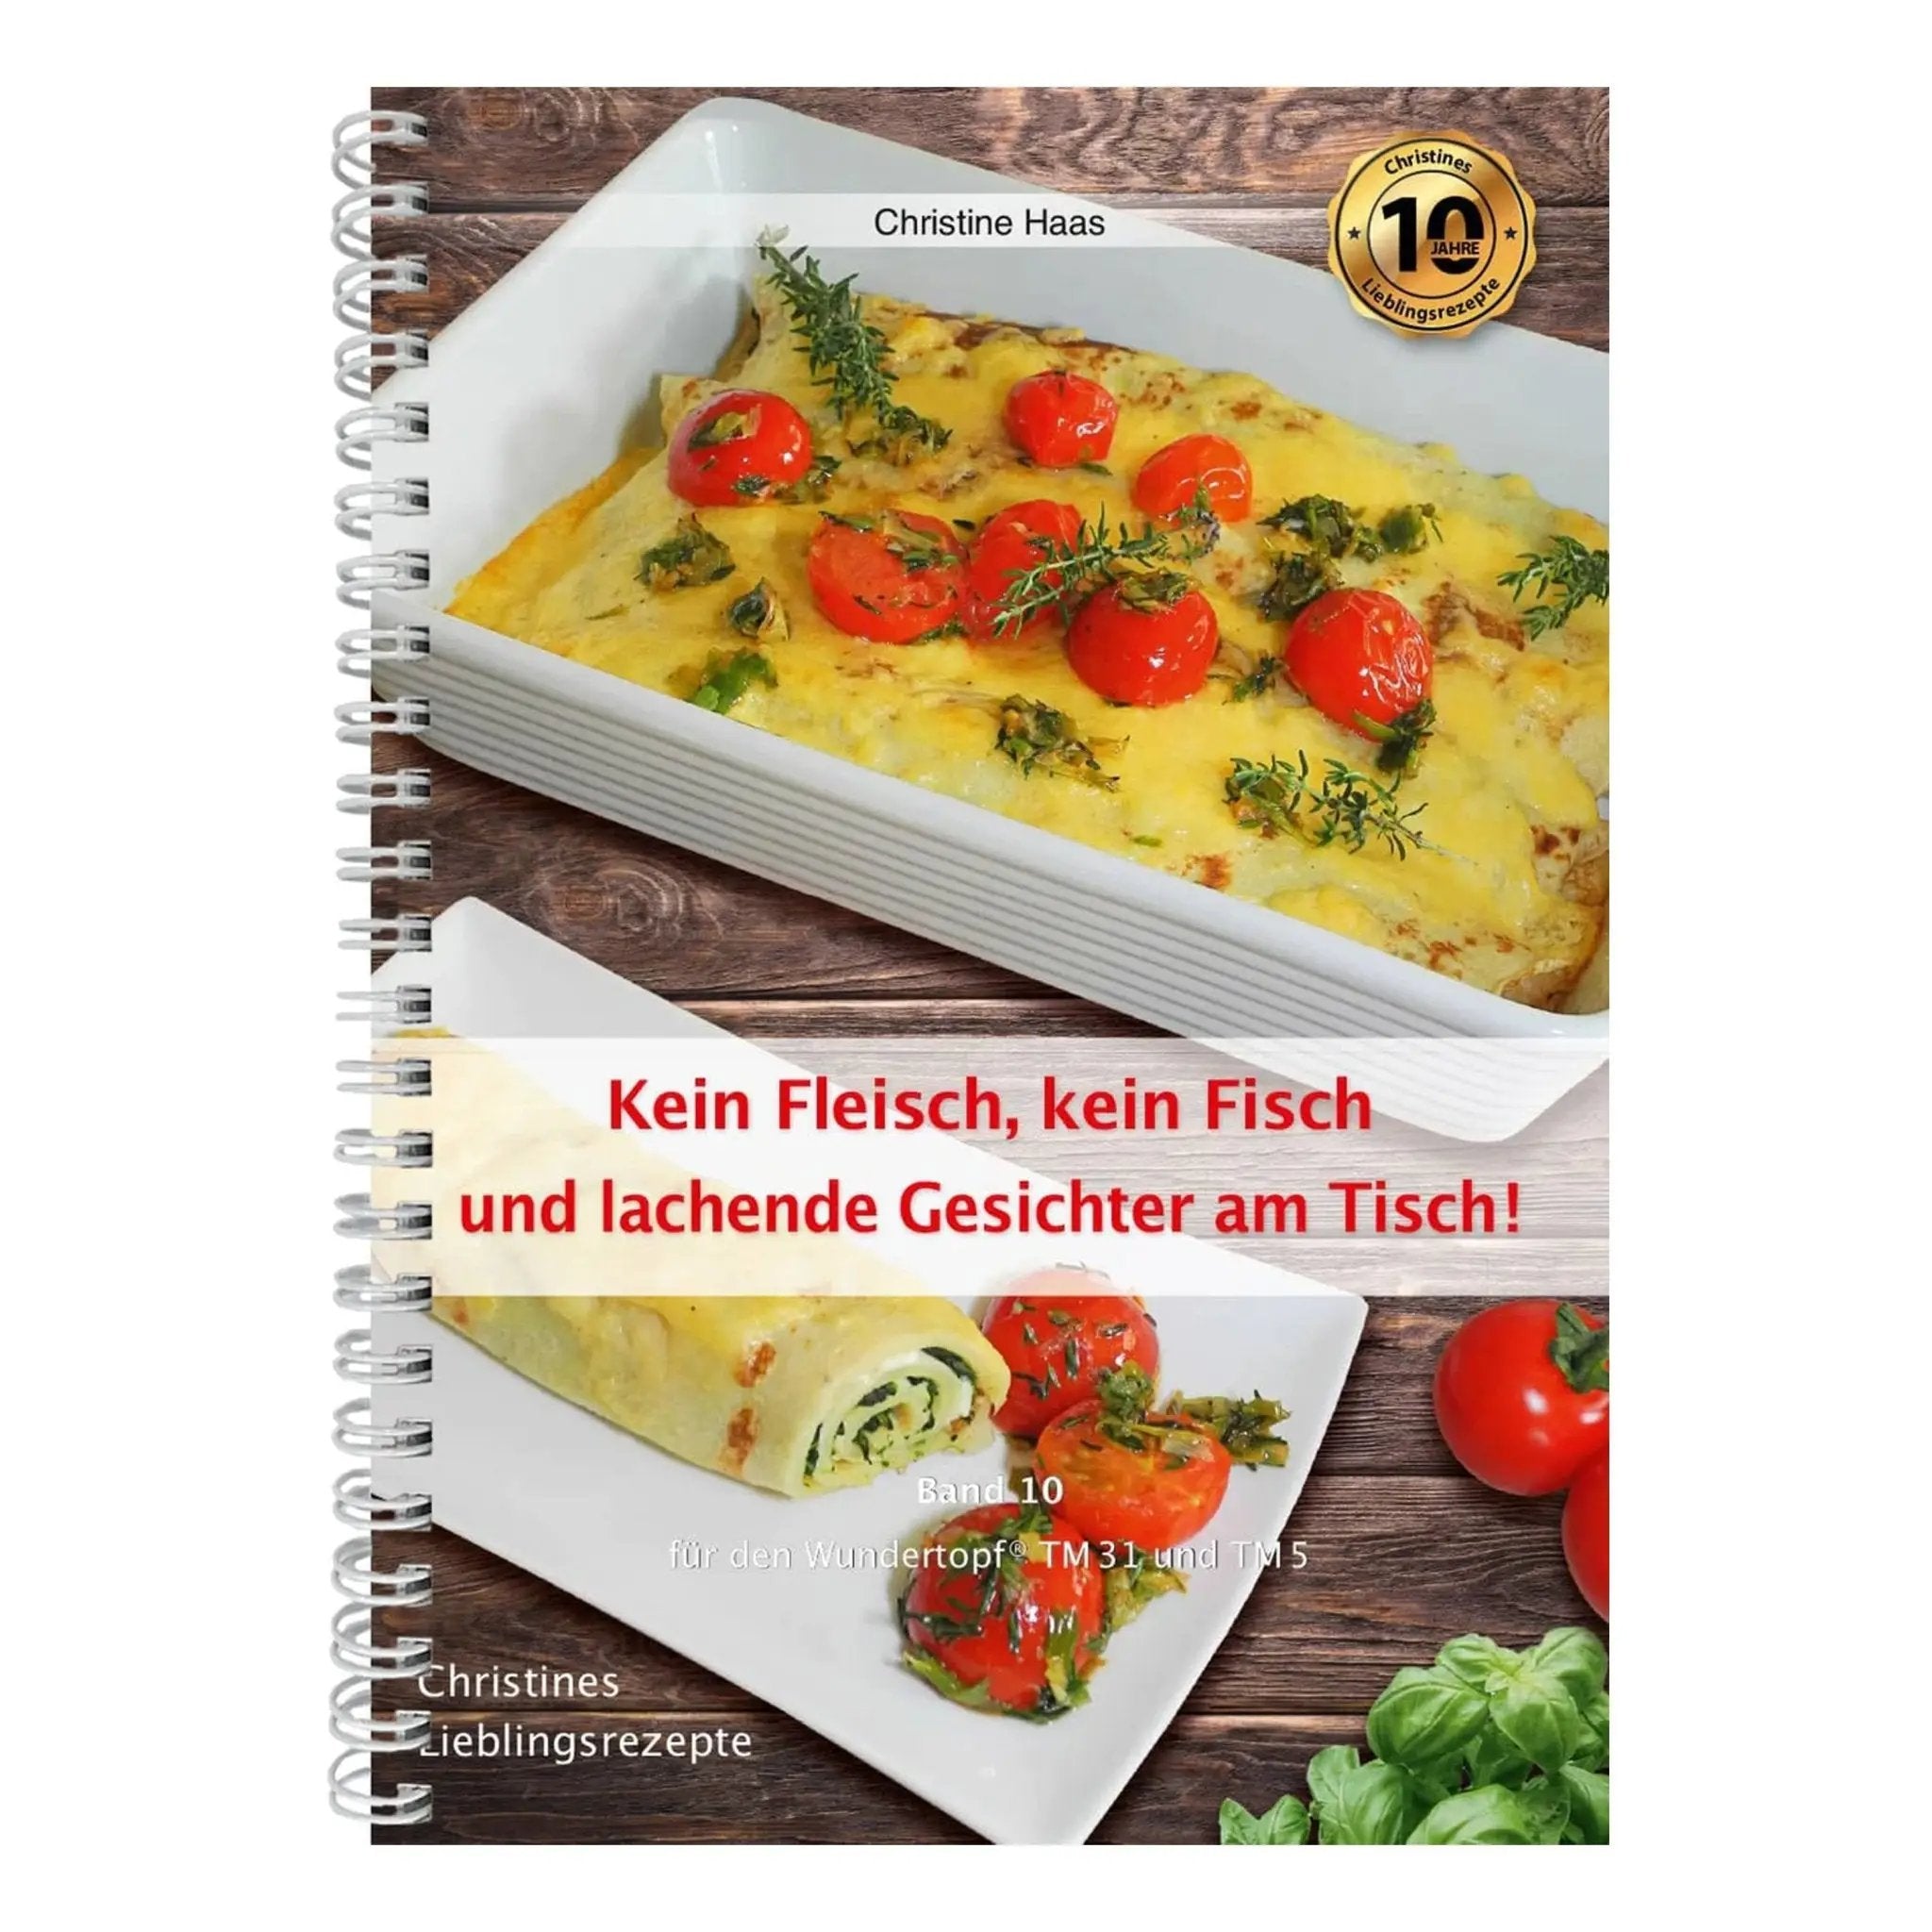 Kein Fleisch, kein Fisch und lachende Gesichter am Tisch! | Christine Haas | Band 10 - Wundermix GmbH